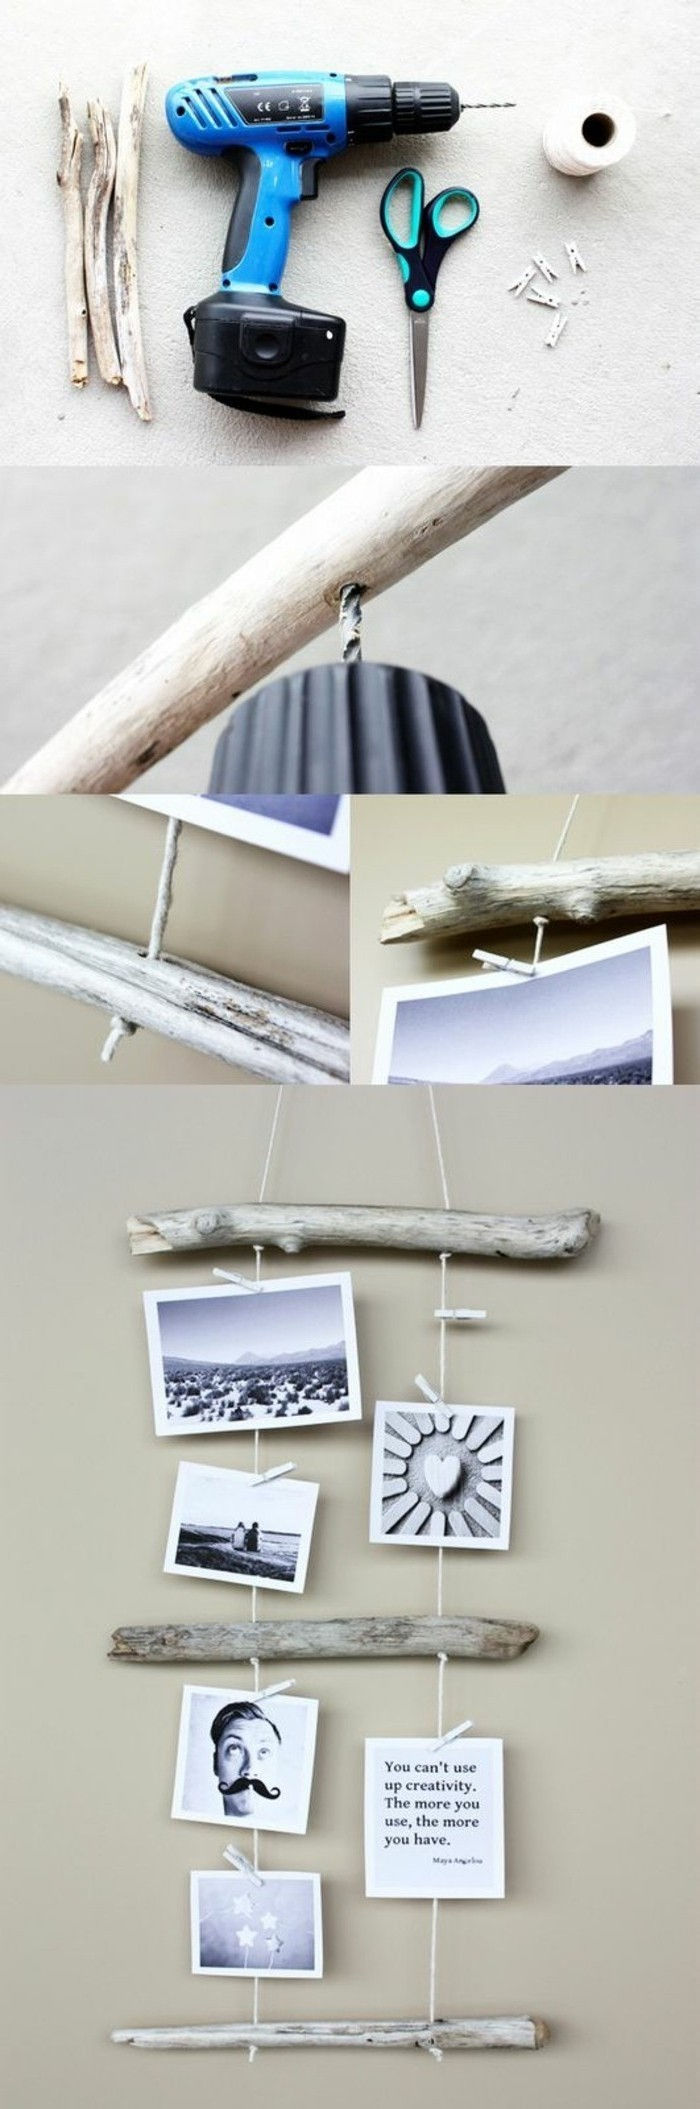 5-Tinker-z-naplavljenega lesa-fotowand-yourself odločitev aeste ozadje drill-škarje